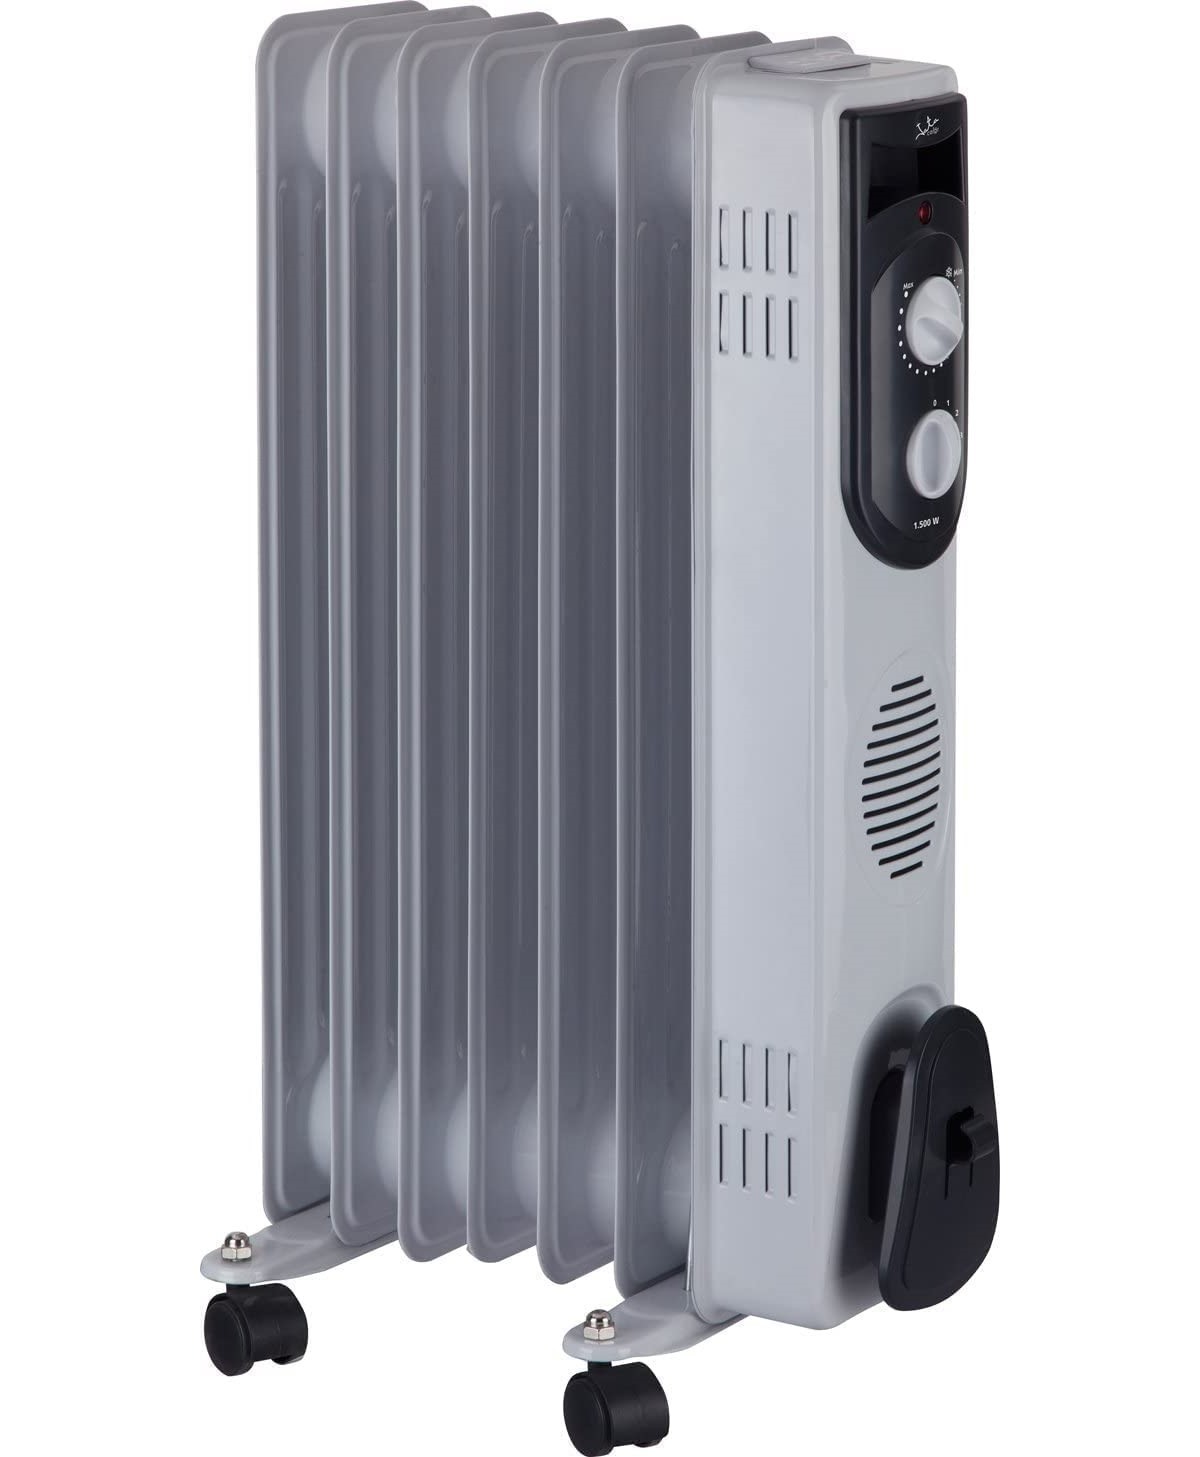 m²) Elektrisch Ölradiator Thermostat R107 20 JUNG JATA kW, (1,5 Heizung Ölradiator Raumgröße: mit